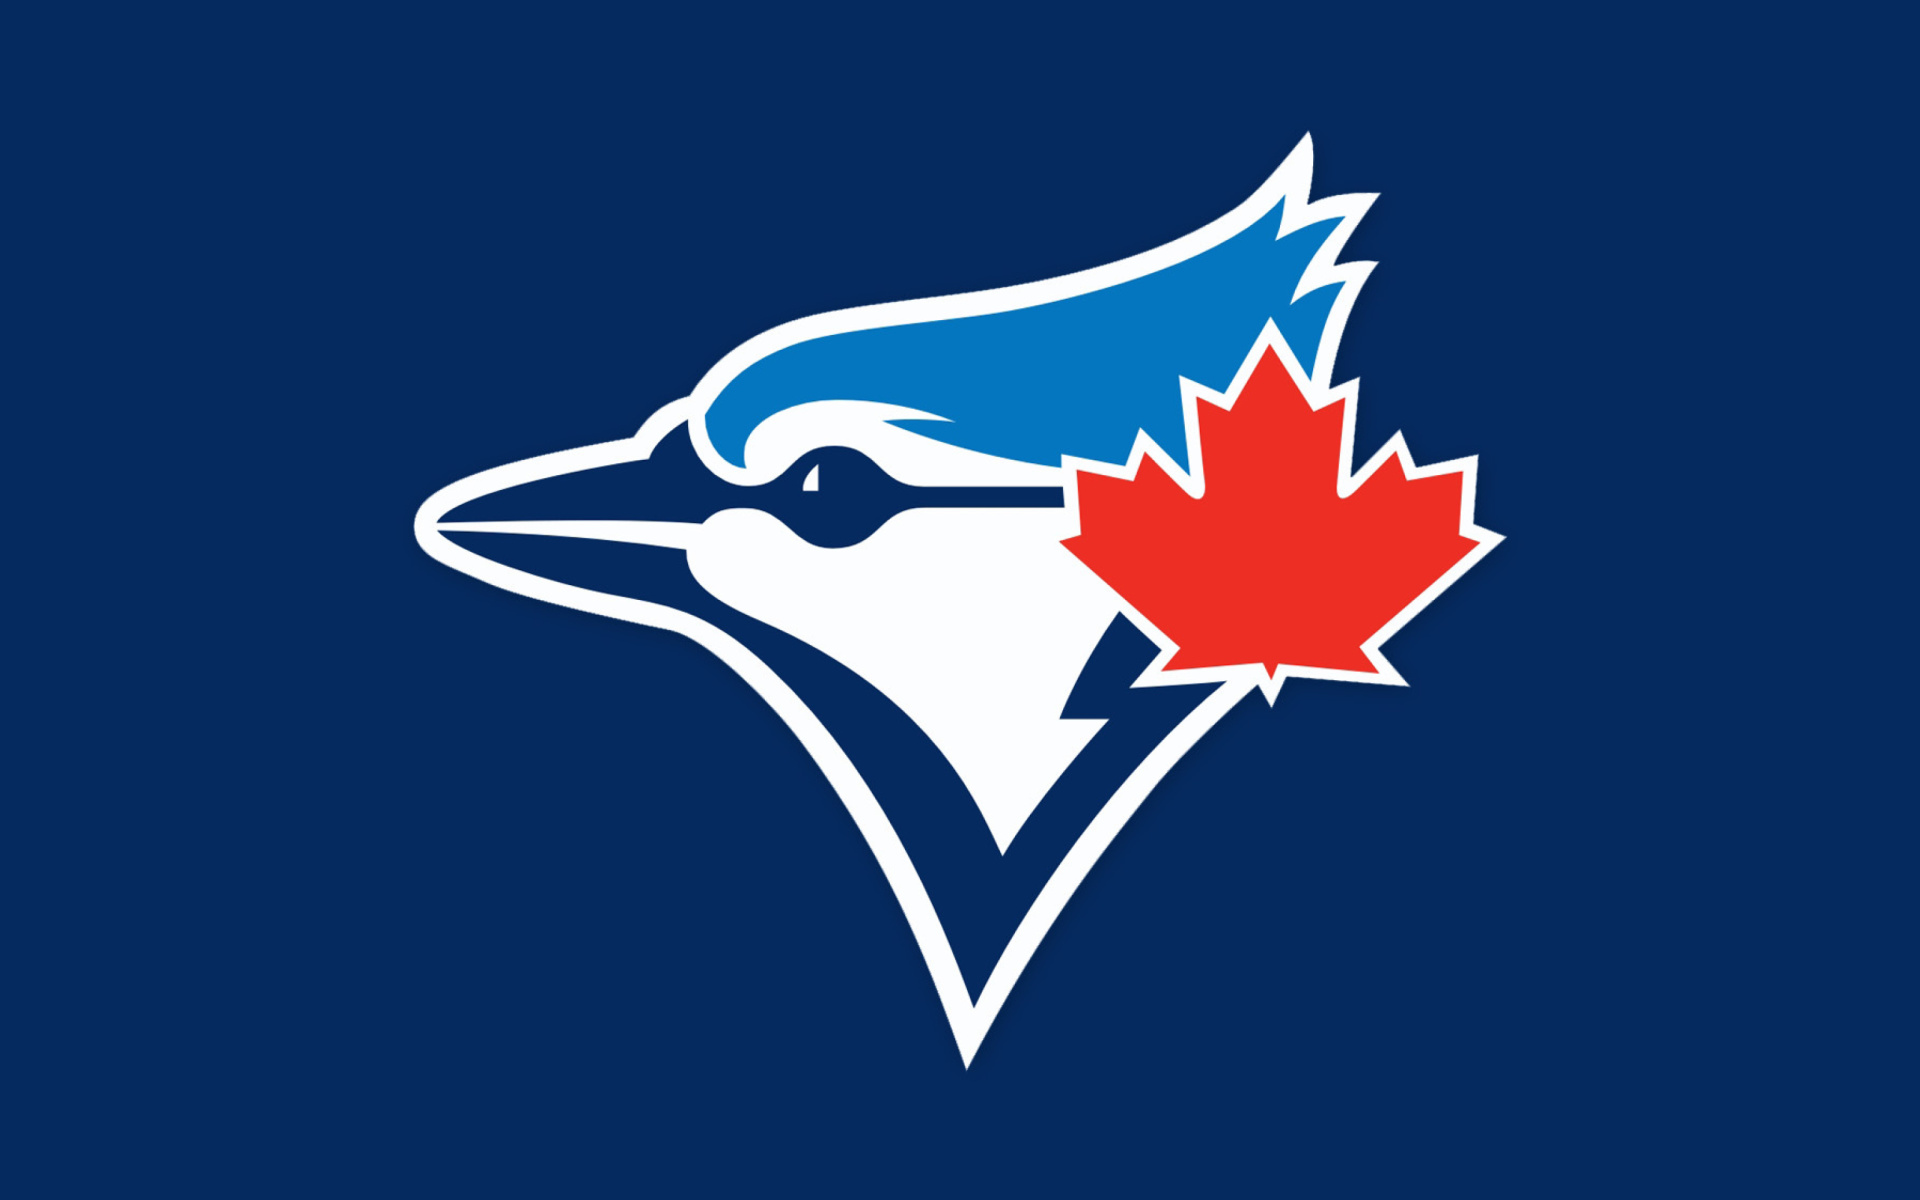 Toronto Blue Jays Canadian Baseball Team - Fondos de pantalla gratis para  Widescreen escritorio PC 1920x1080 Full HD